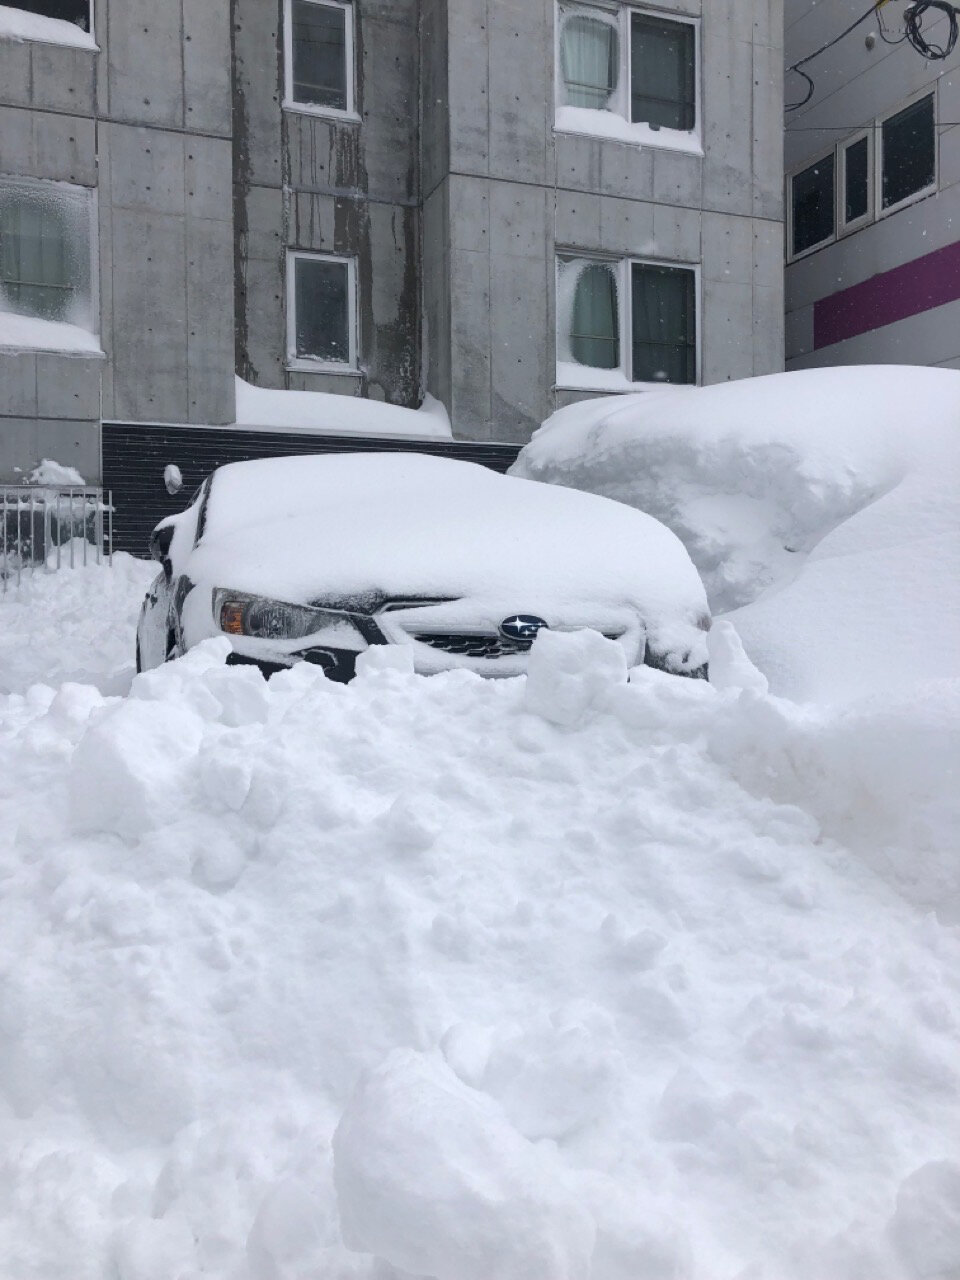 城所さんの愛車が雪で埋まってしまった時の写真